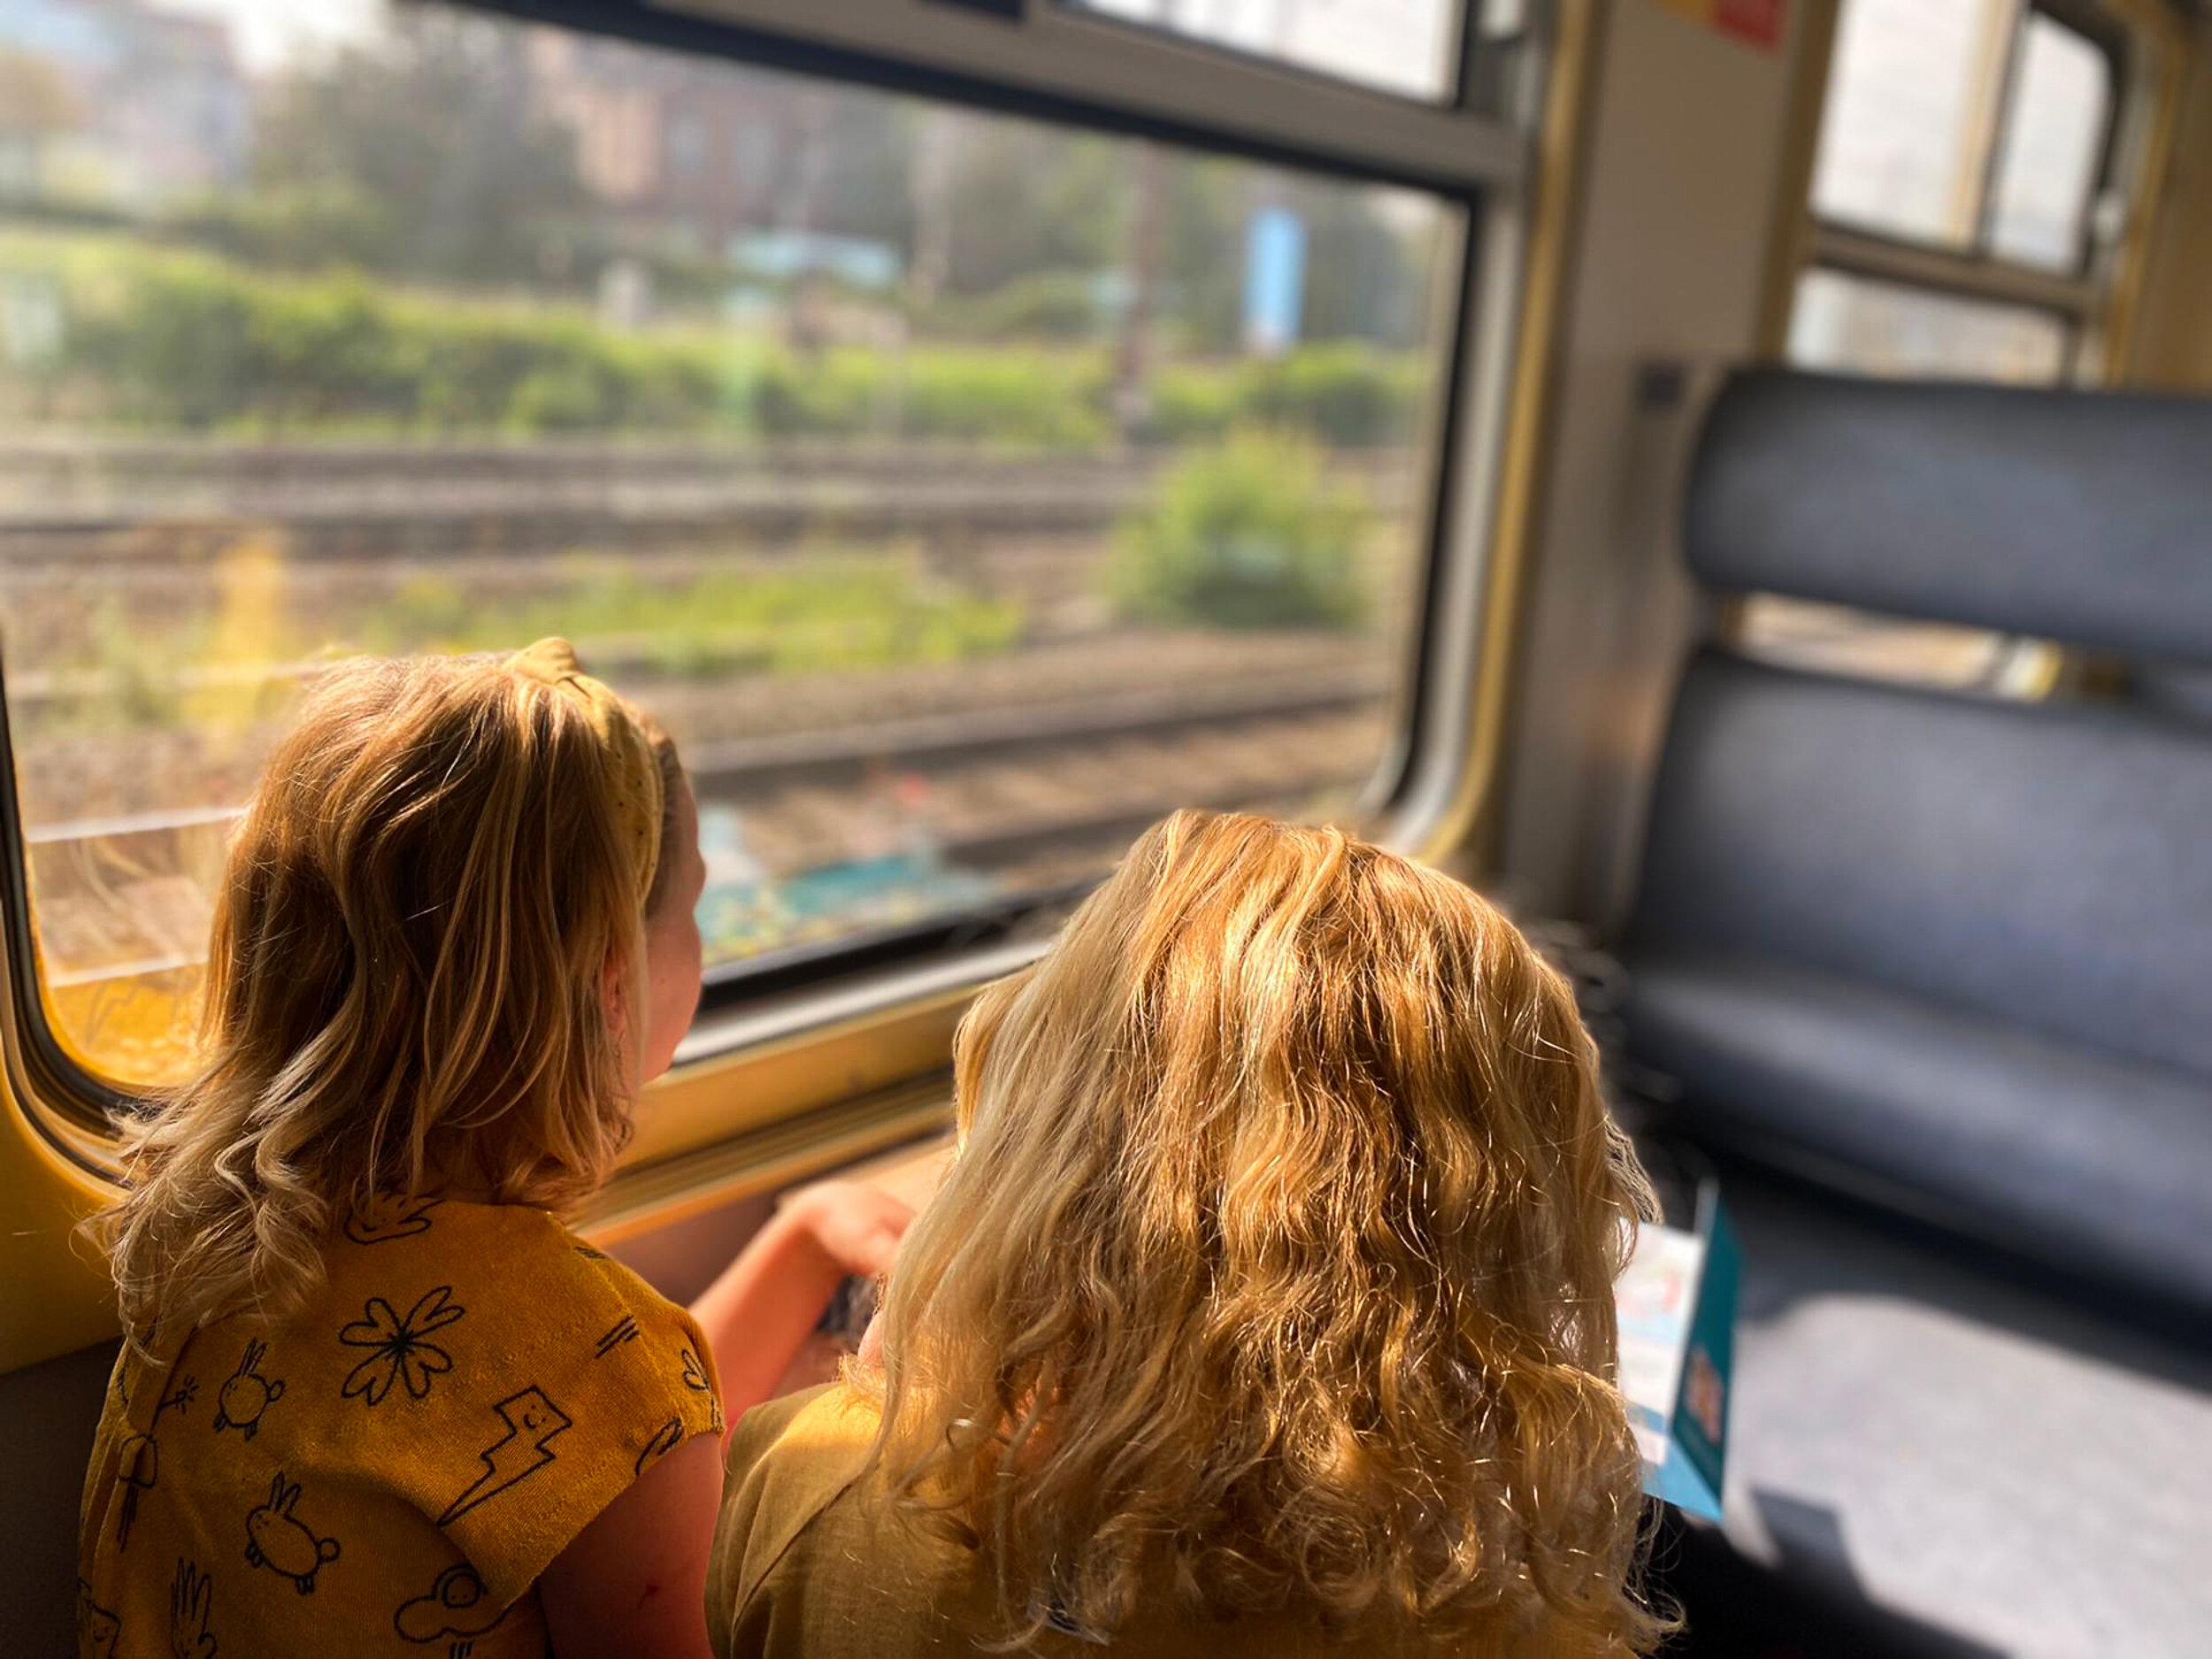 verlangen Kwik Ongemak Op avontuur met de trein — Vaderklap